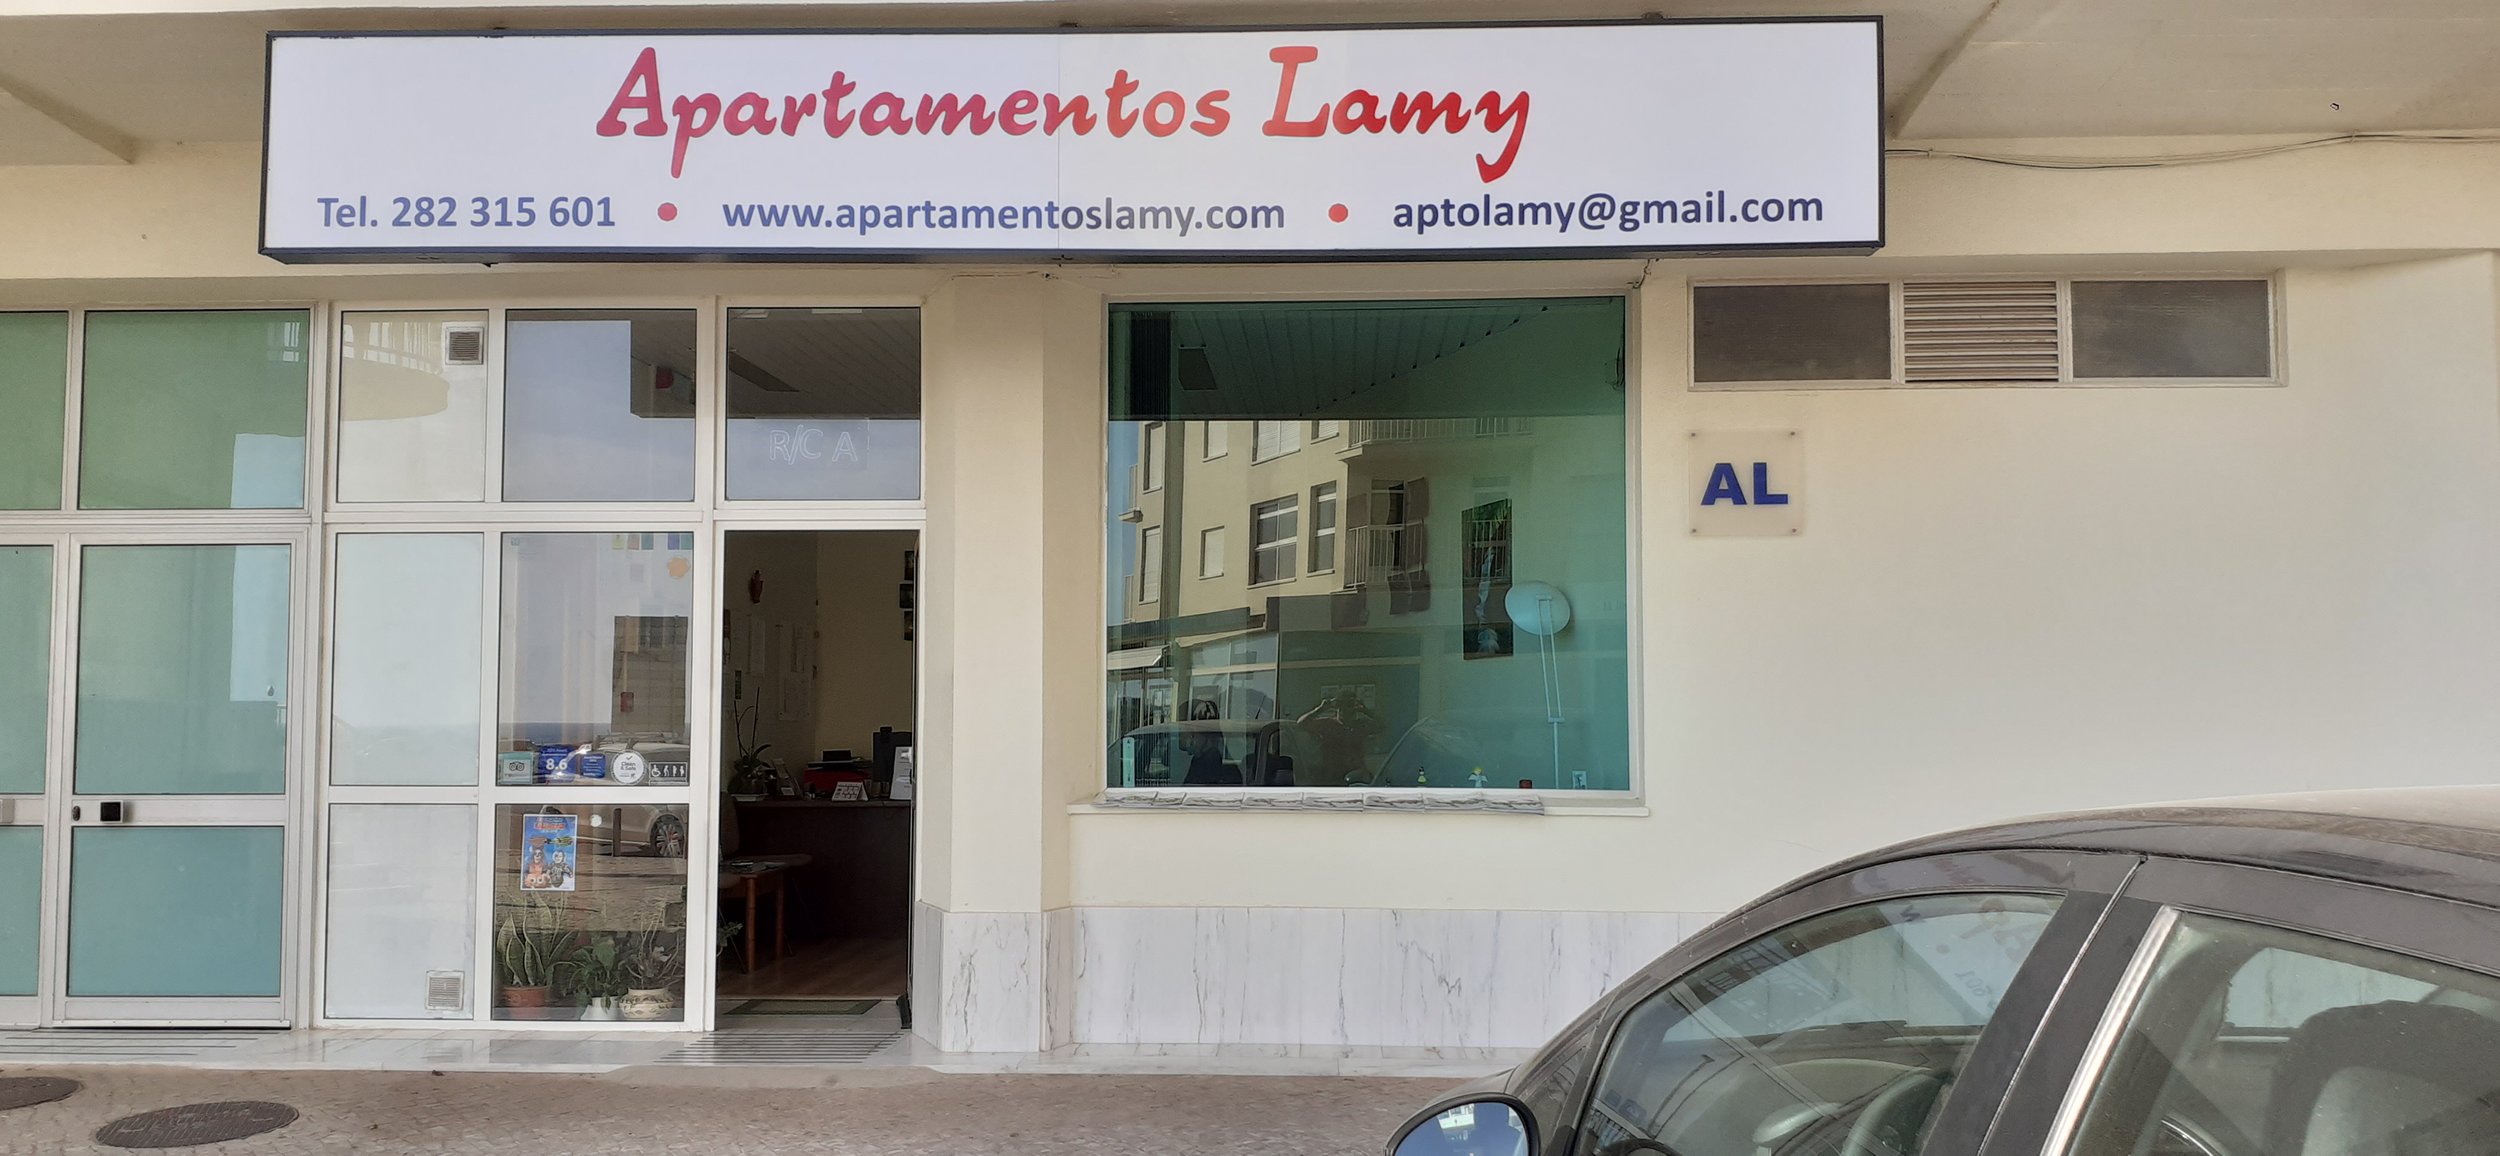 Apartmentos Lamy in Armação de Pêra - Algarve